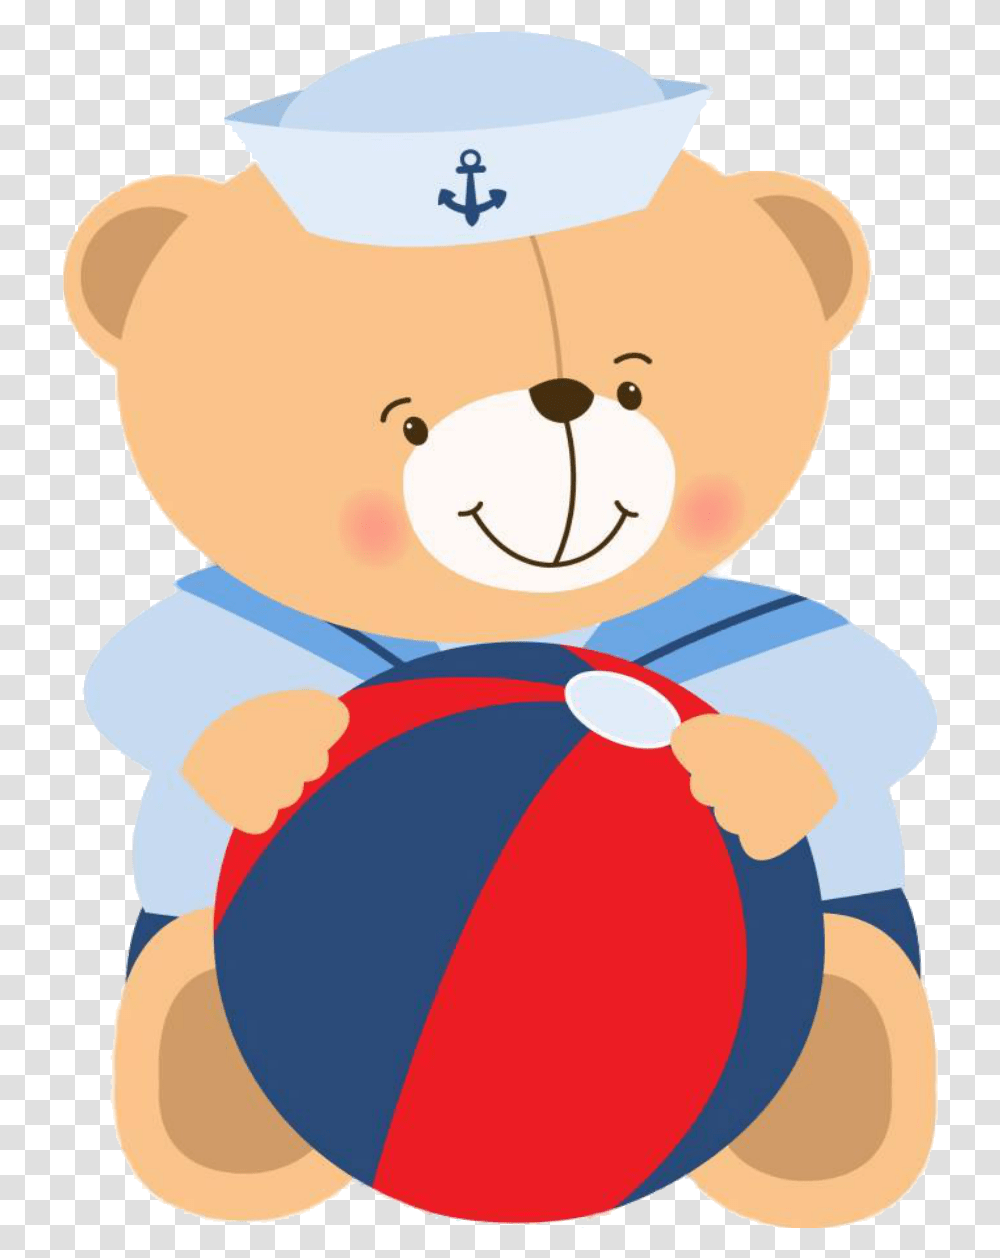 Desenho Ursinho Marinheiro Sailor Bear, Snowman, Toy, Ball Transparent Png